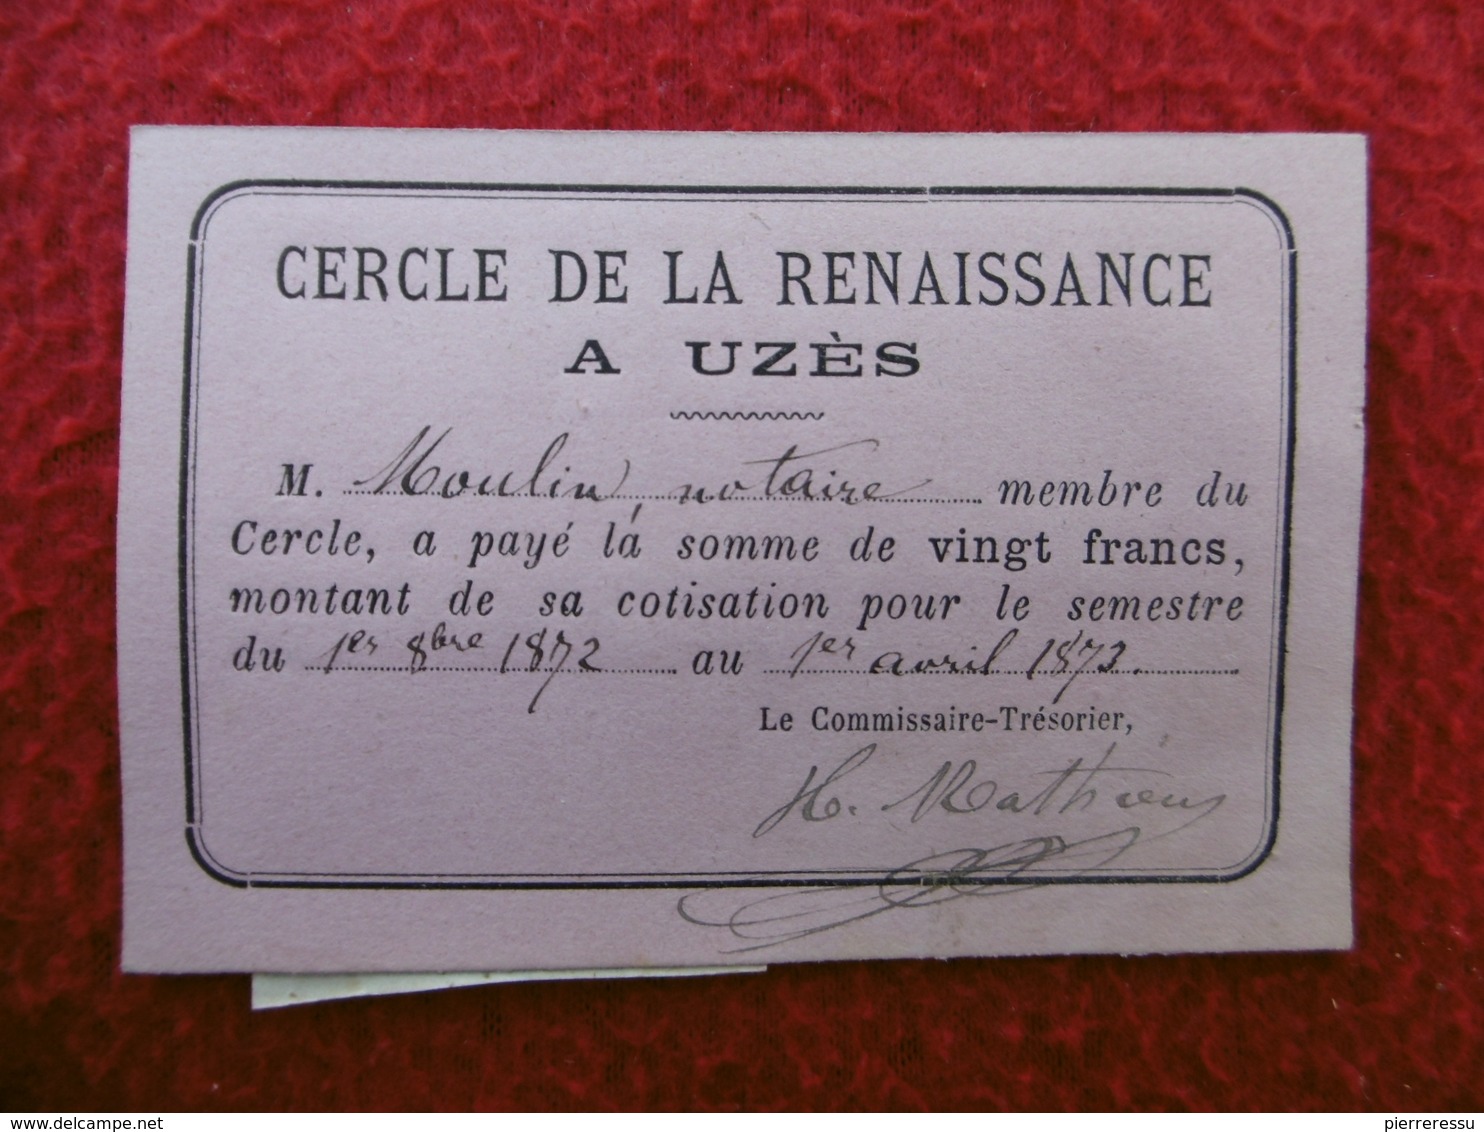 UZES CERCLE DE LA RENAISSANCE CARTE DE MEMBRE TIMBRE FISCAL 1871 - Documentos Históricos